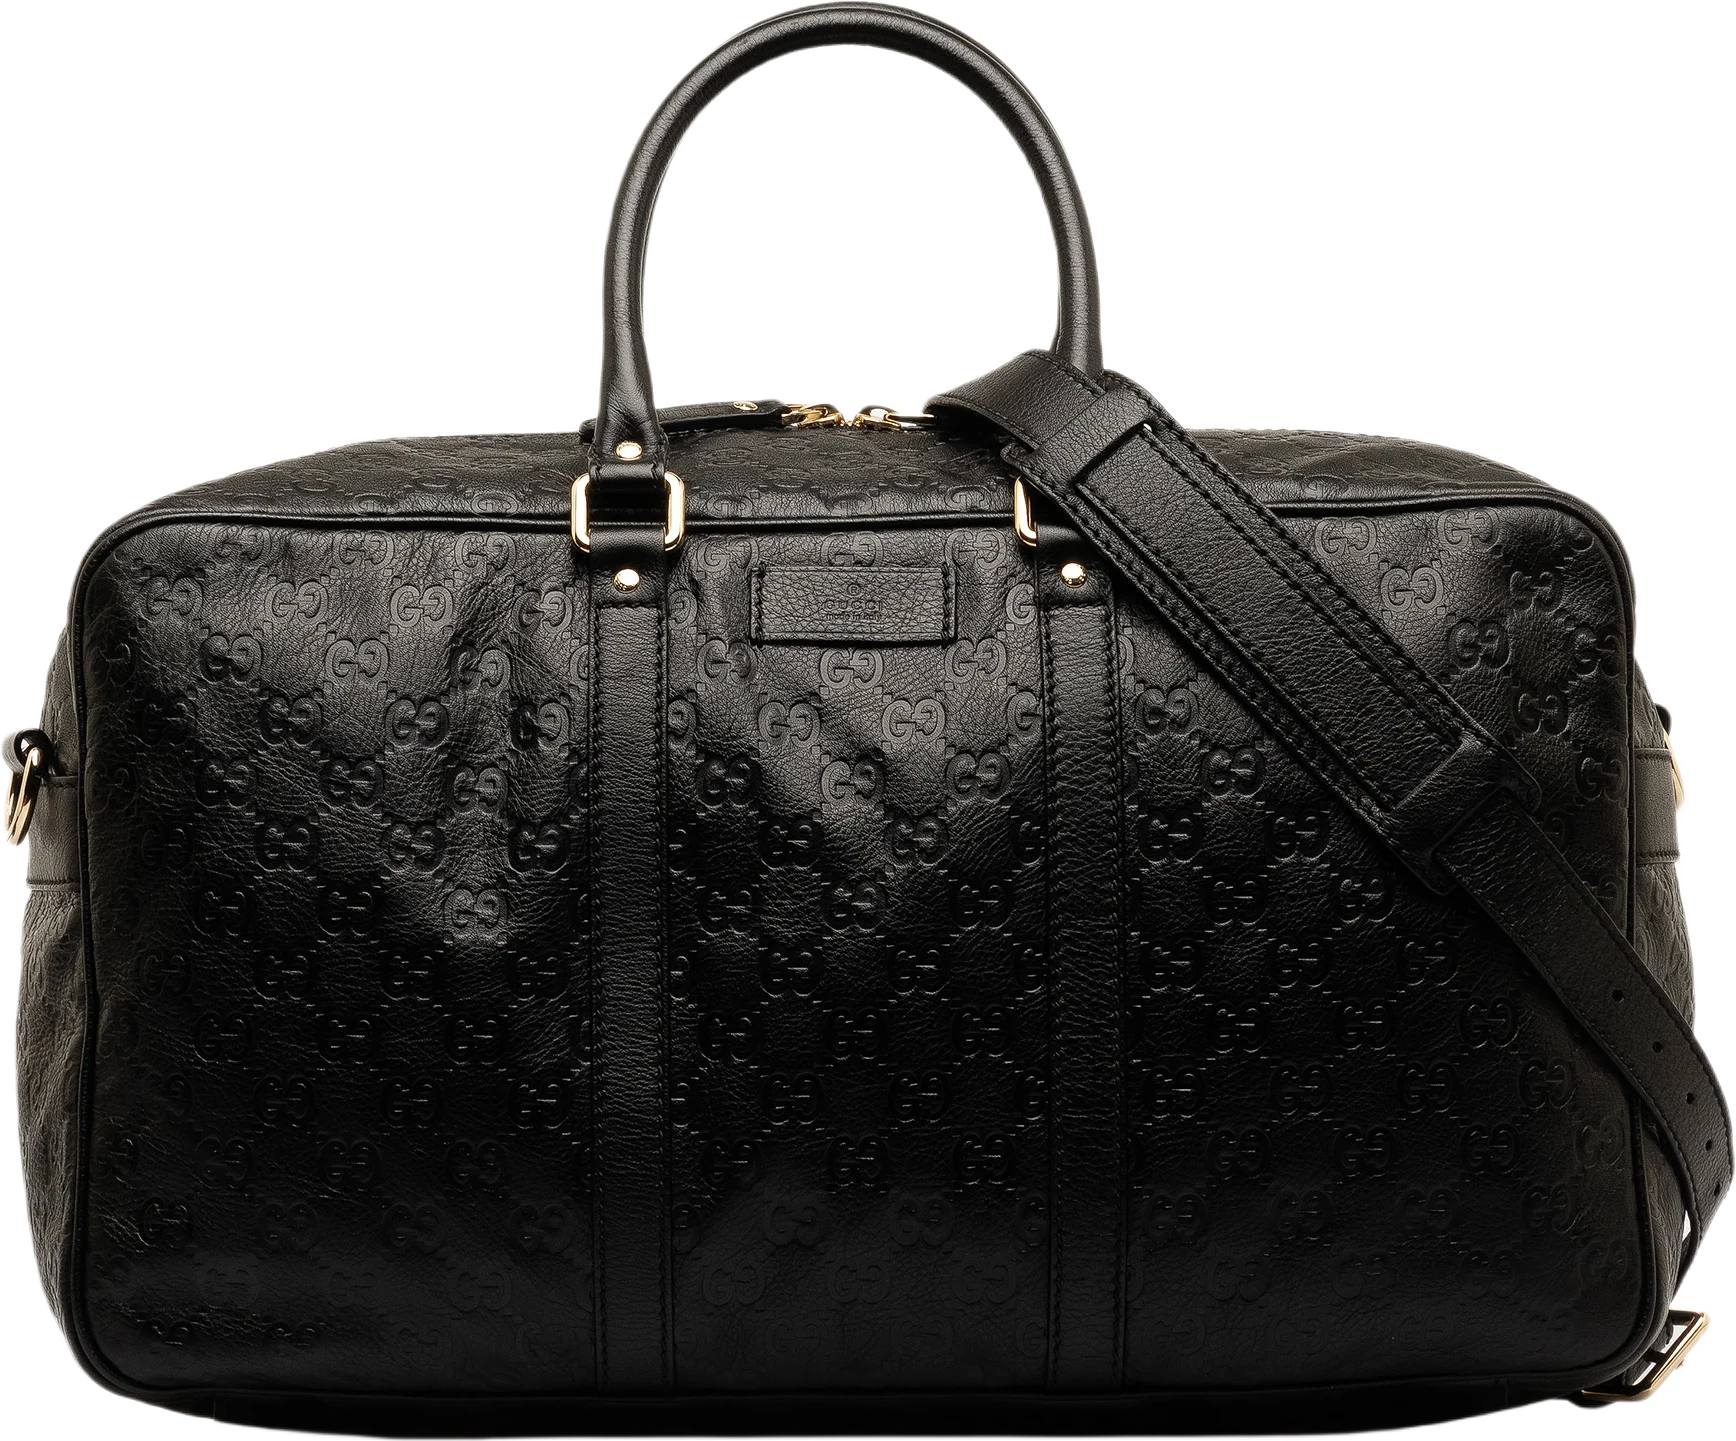 Gucci Guccissima Travel Bag